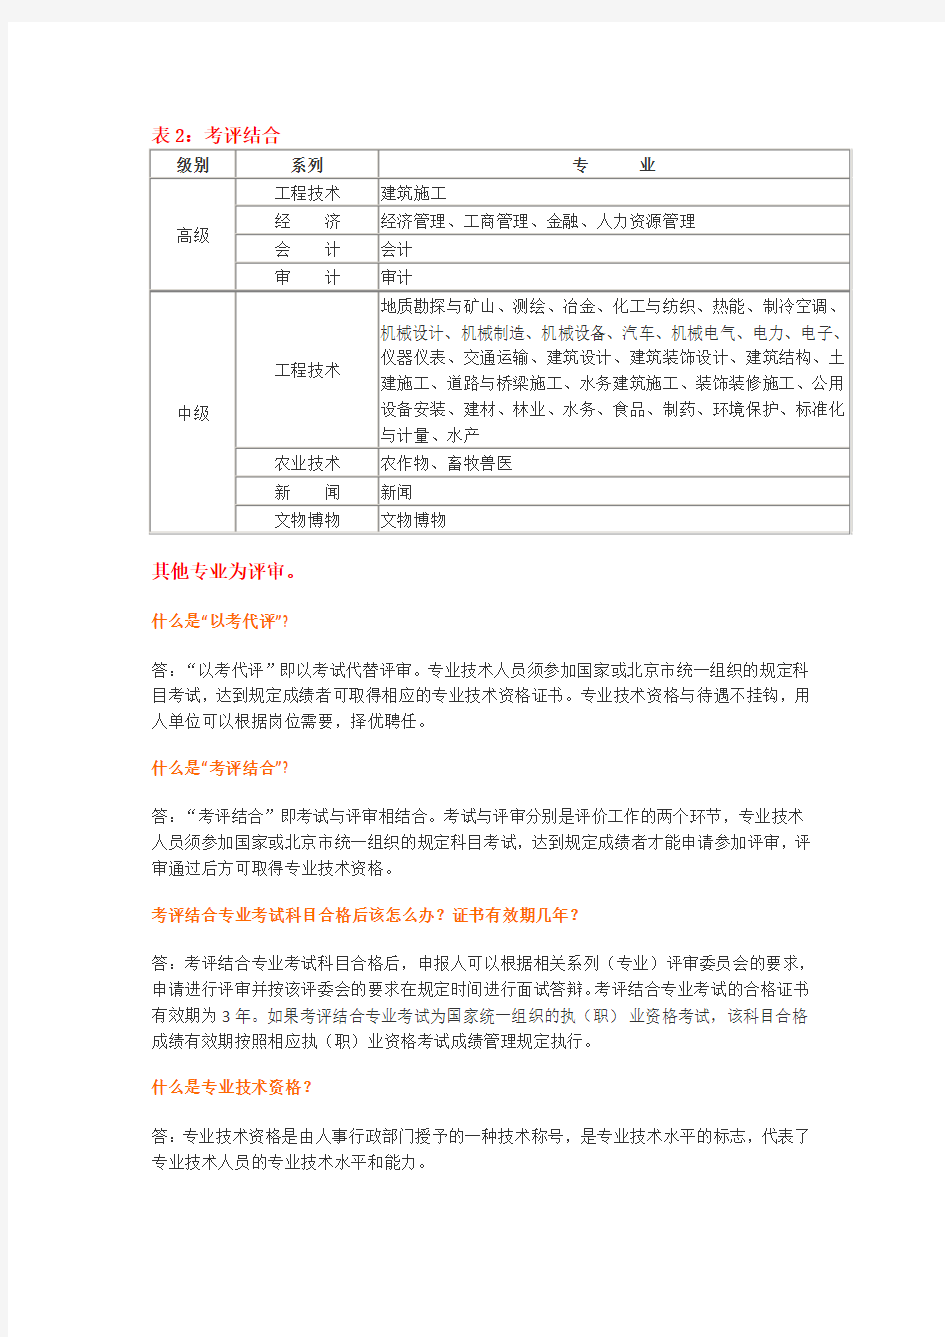 北京市专业技术初级、中级、高级职称考试攻略